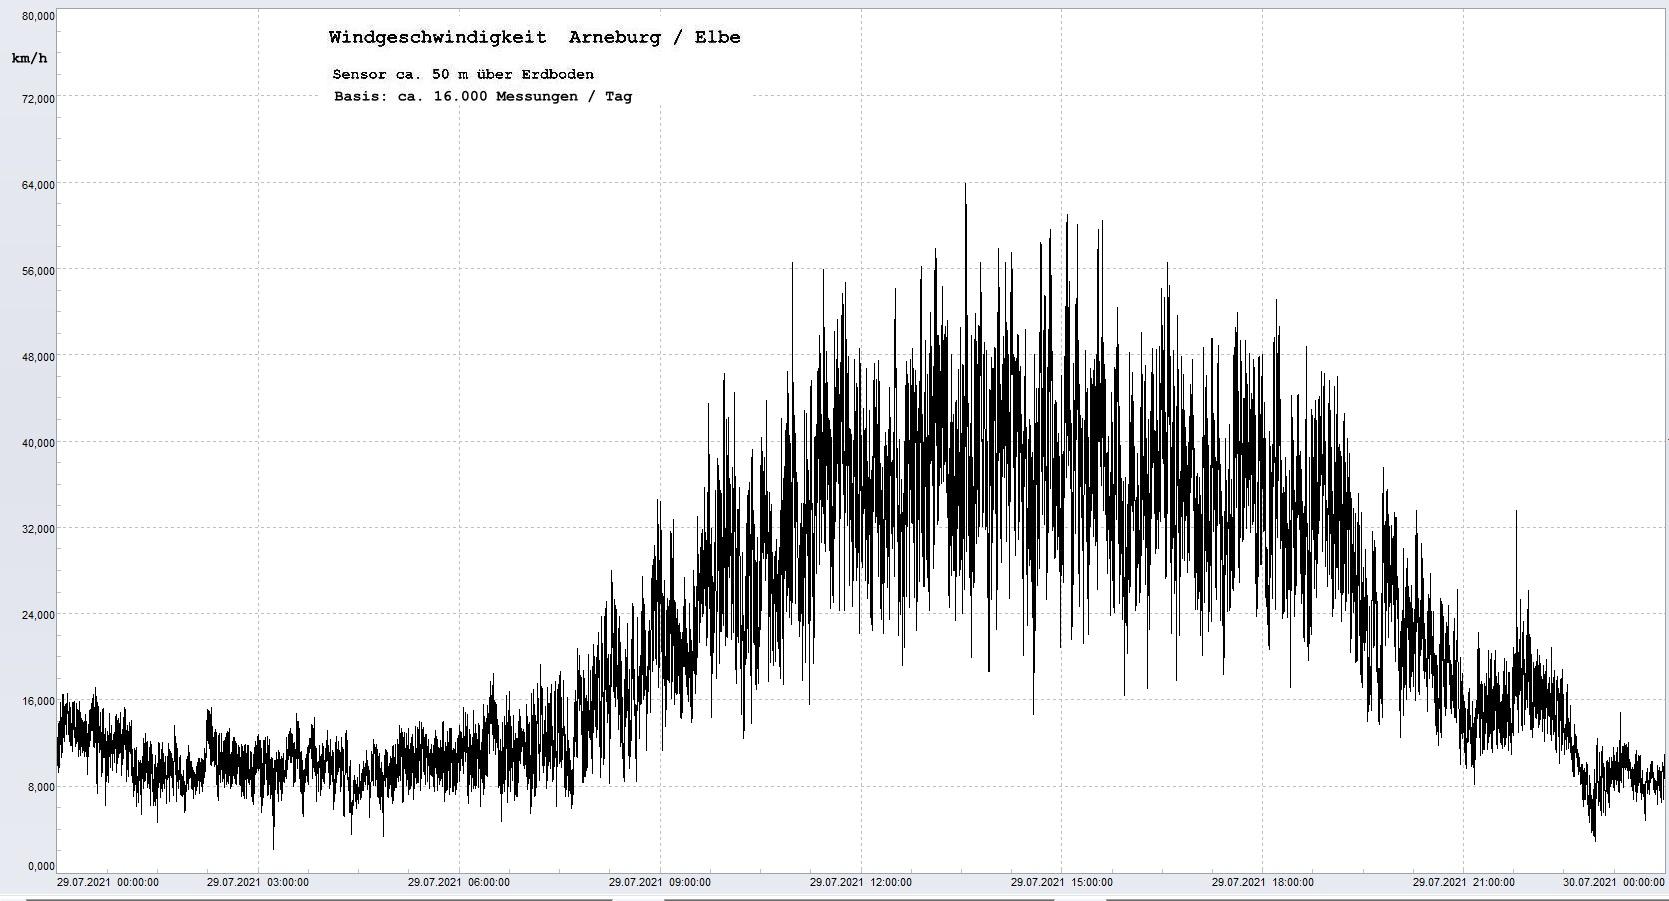 Arneburg Tages-Diagramm Winddaten, 29.07.2021
  Diagramm, Sensor auf Gebude, ca. 50 m ber Erdboden, Basis: 5s-Aufzeichnung